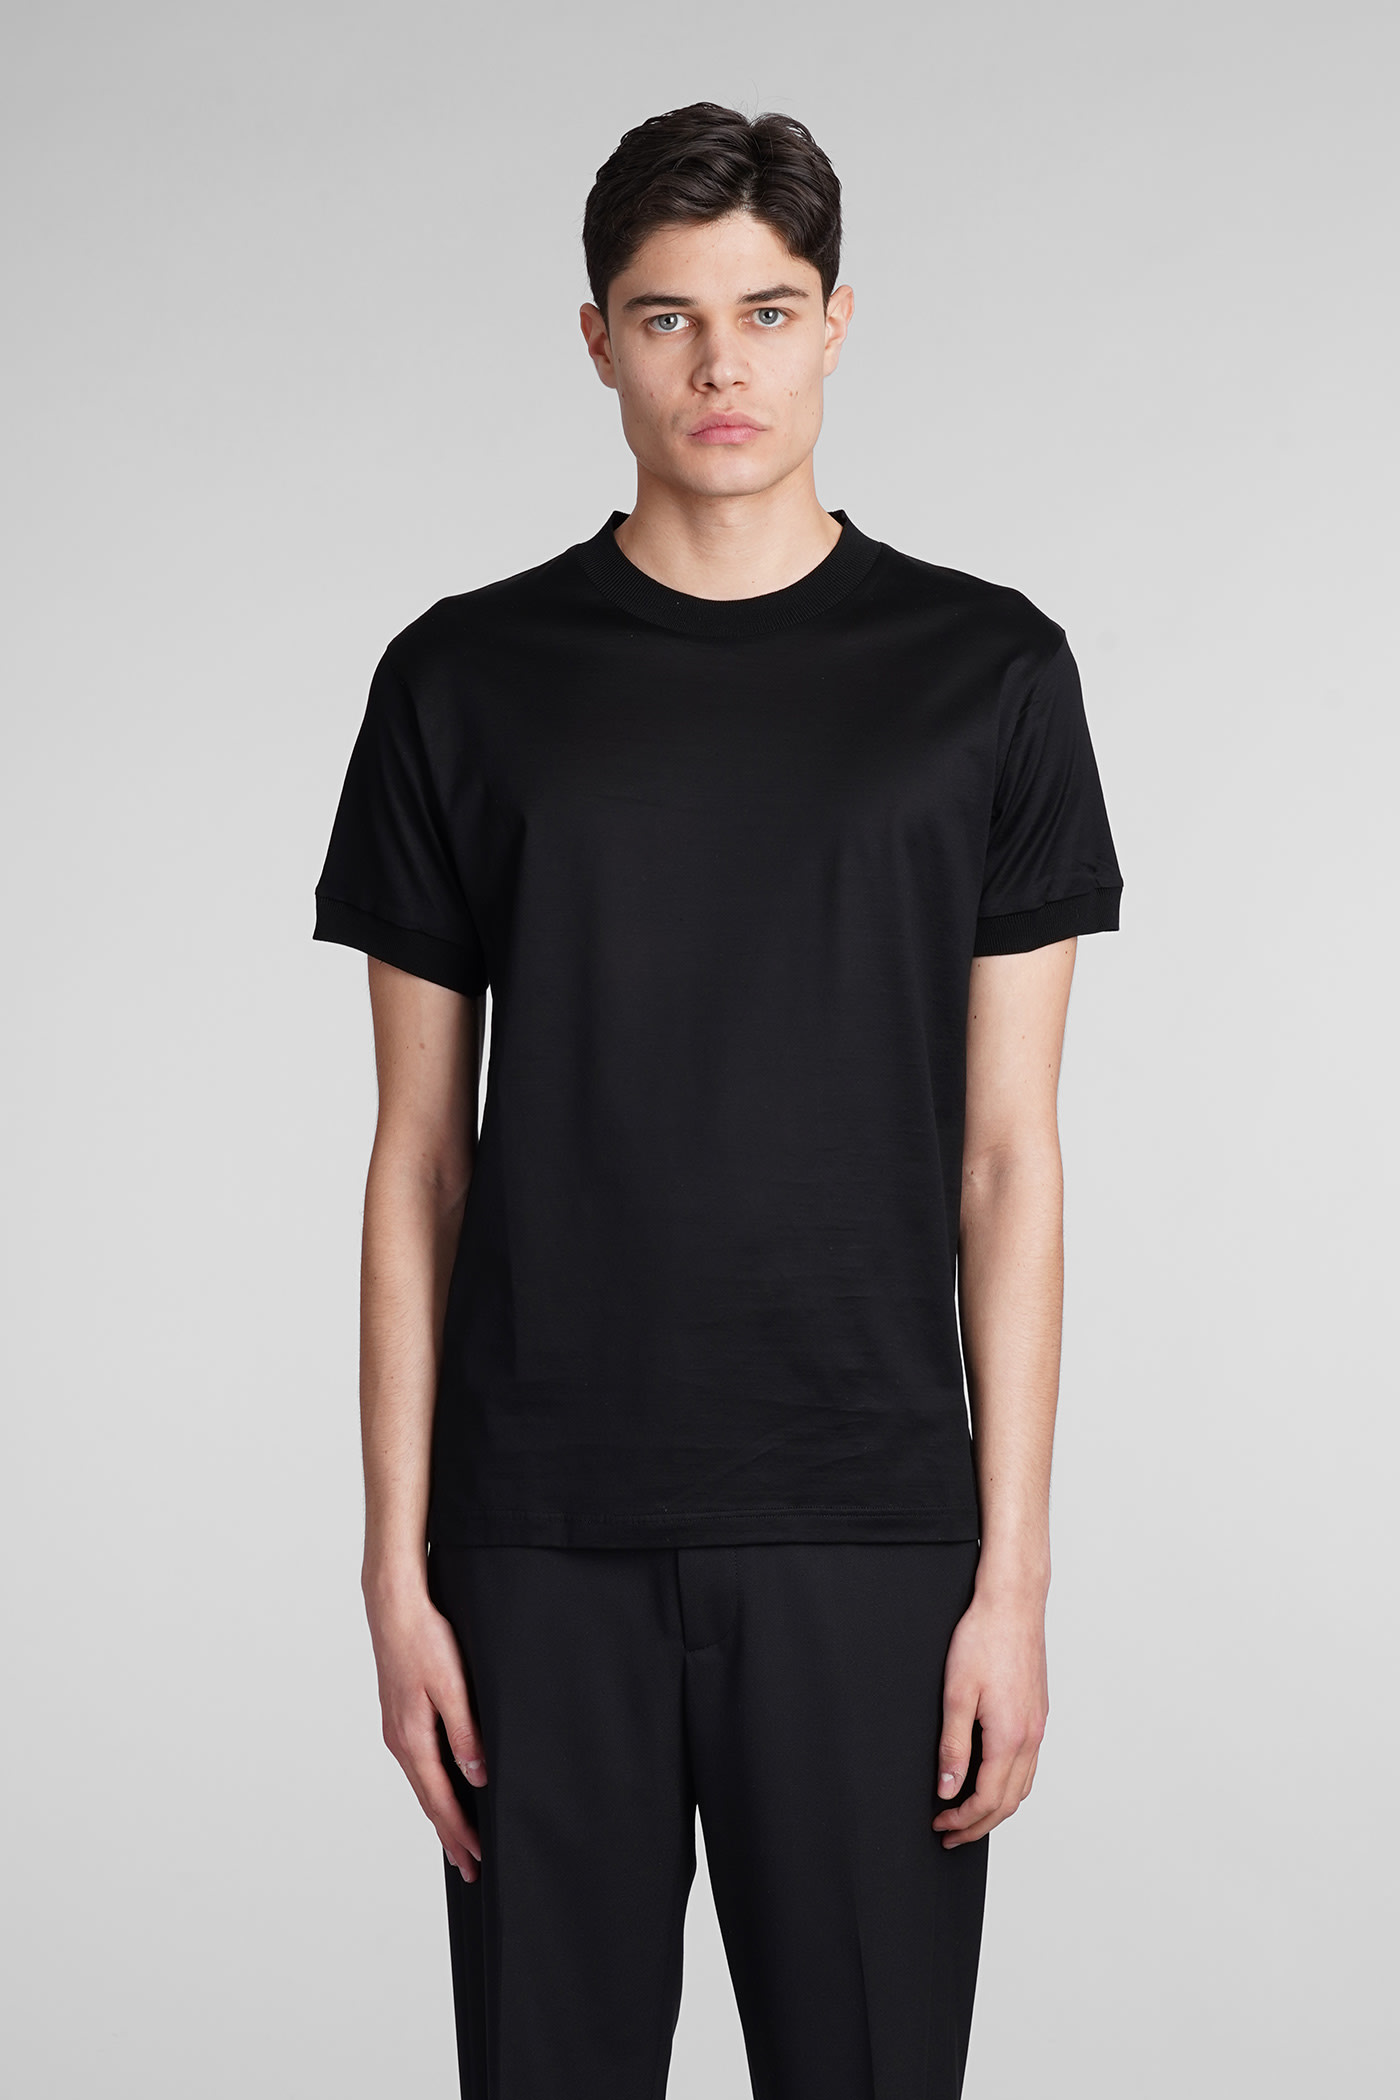 Tagliatore Keys T-shirt In Black Cotton